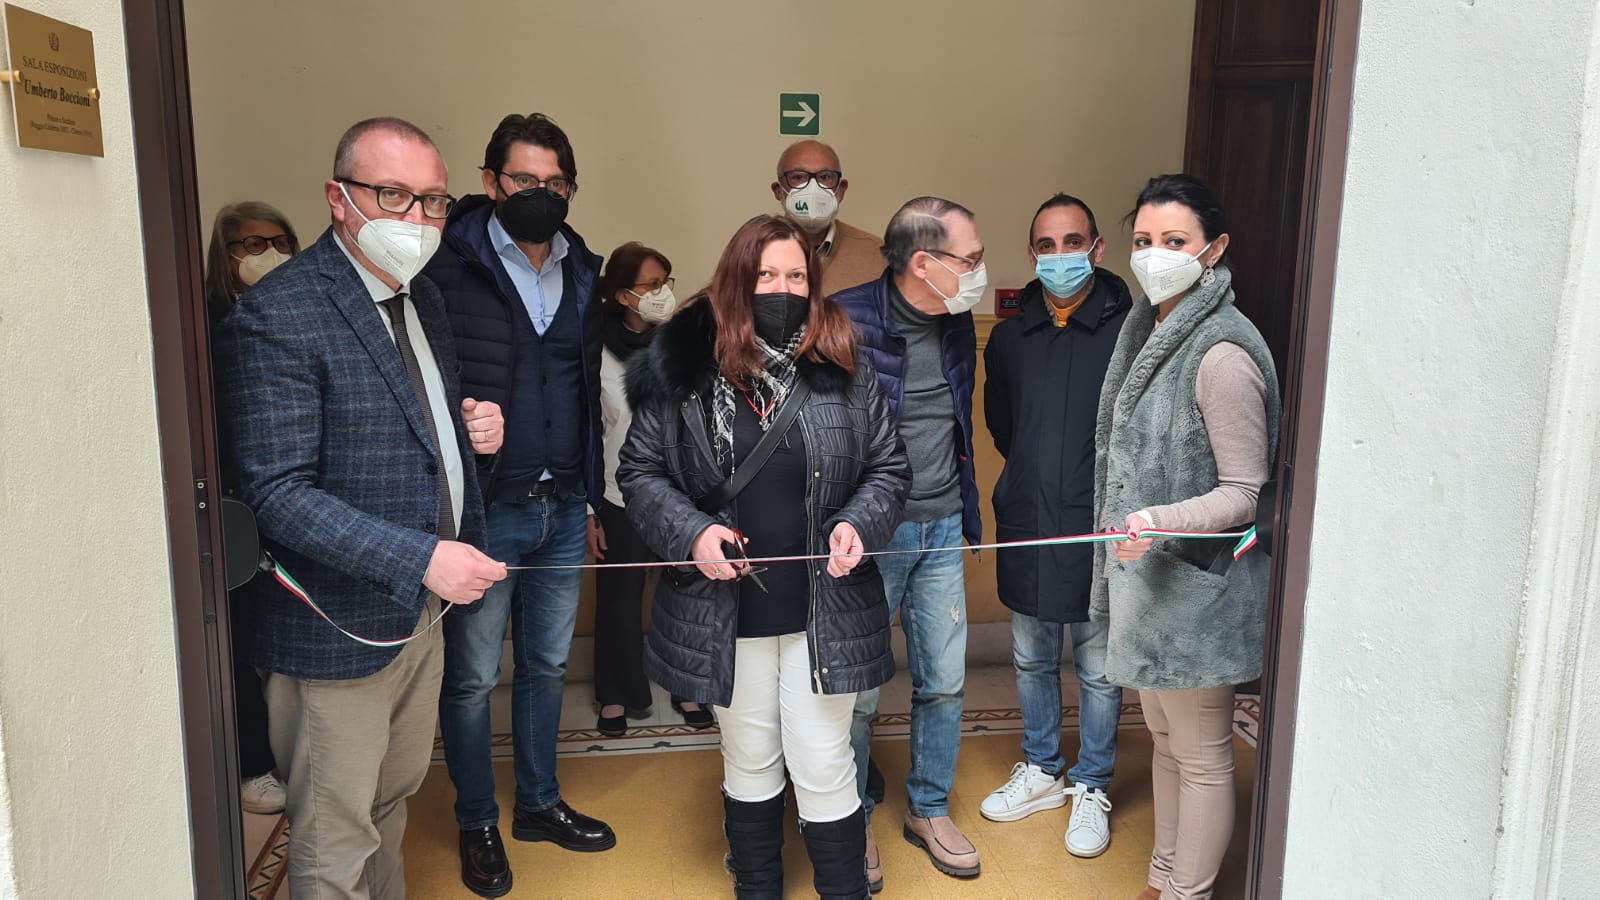 Mostra Canova a Reggio, Versace: «Opere che richiamano i valori supremi della pace»